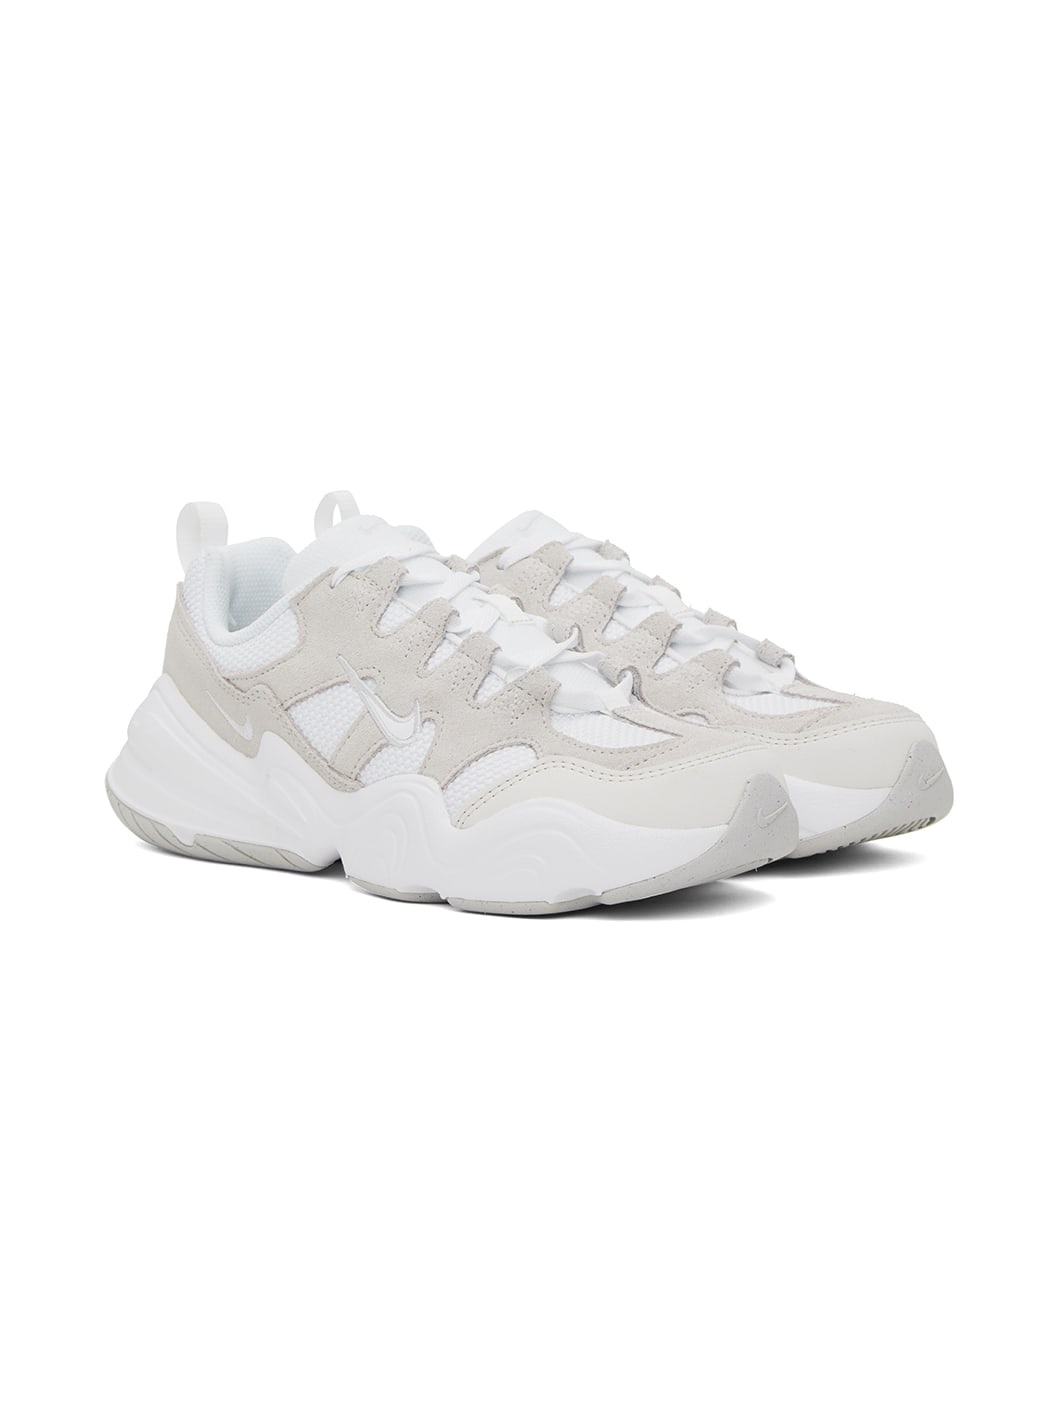 White & Beige Tech Hera Sneakers - 4